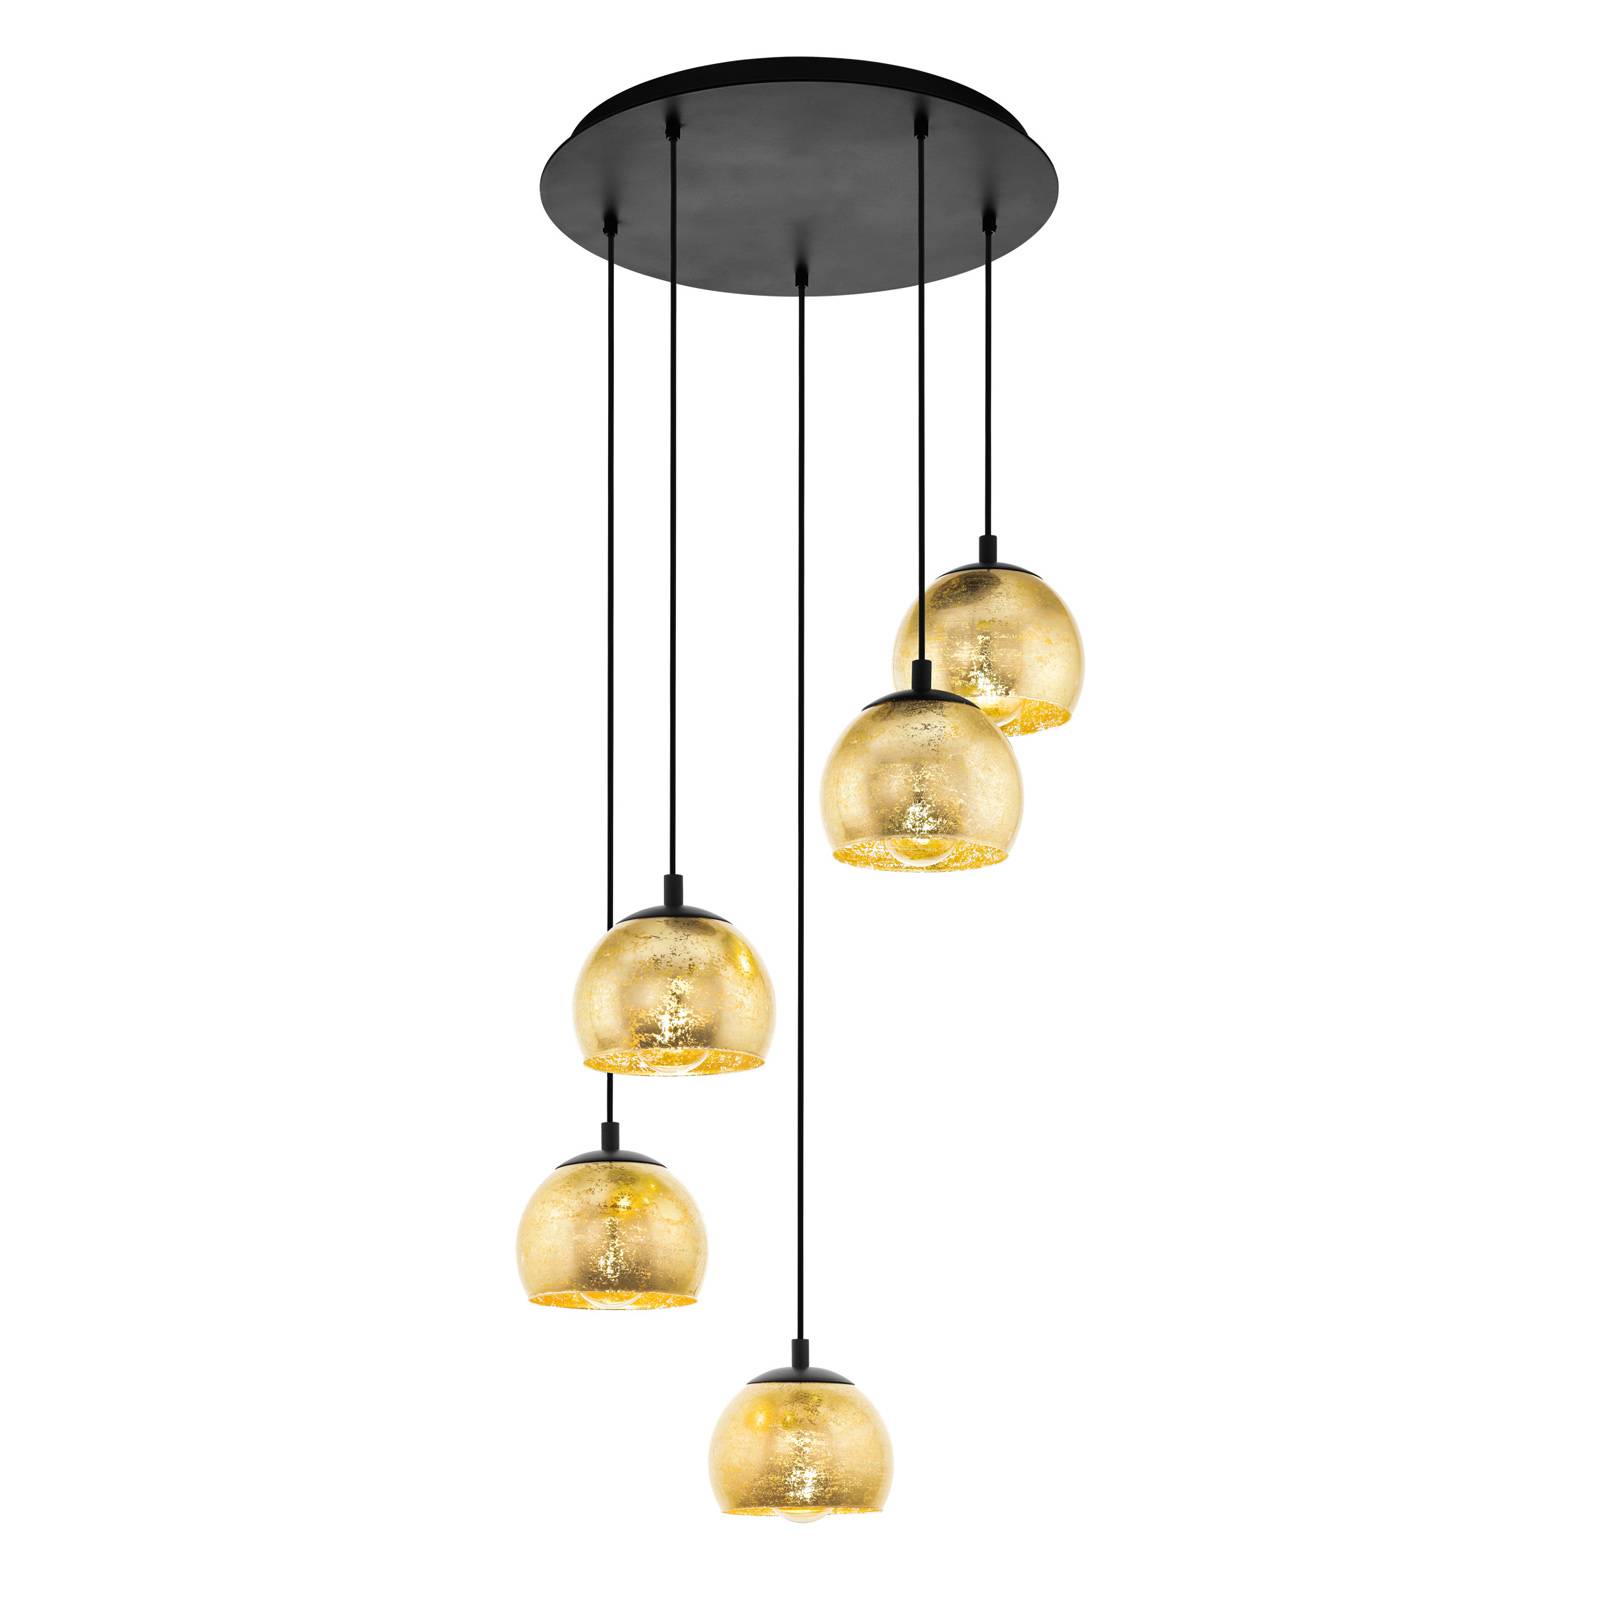 Hanglamp Albaraccin met vijf kappen in goud